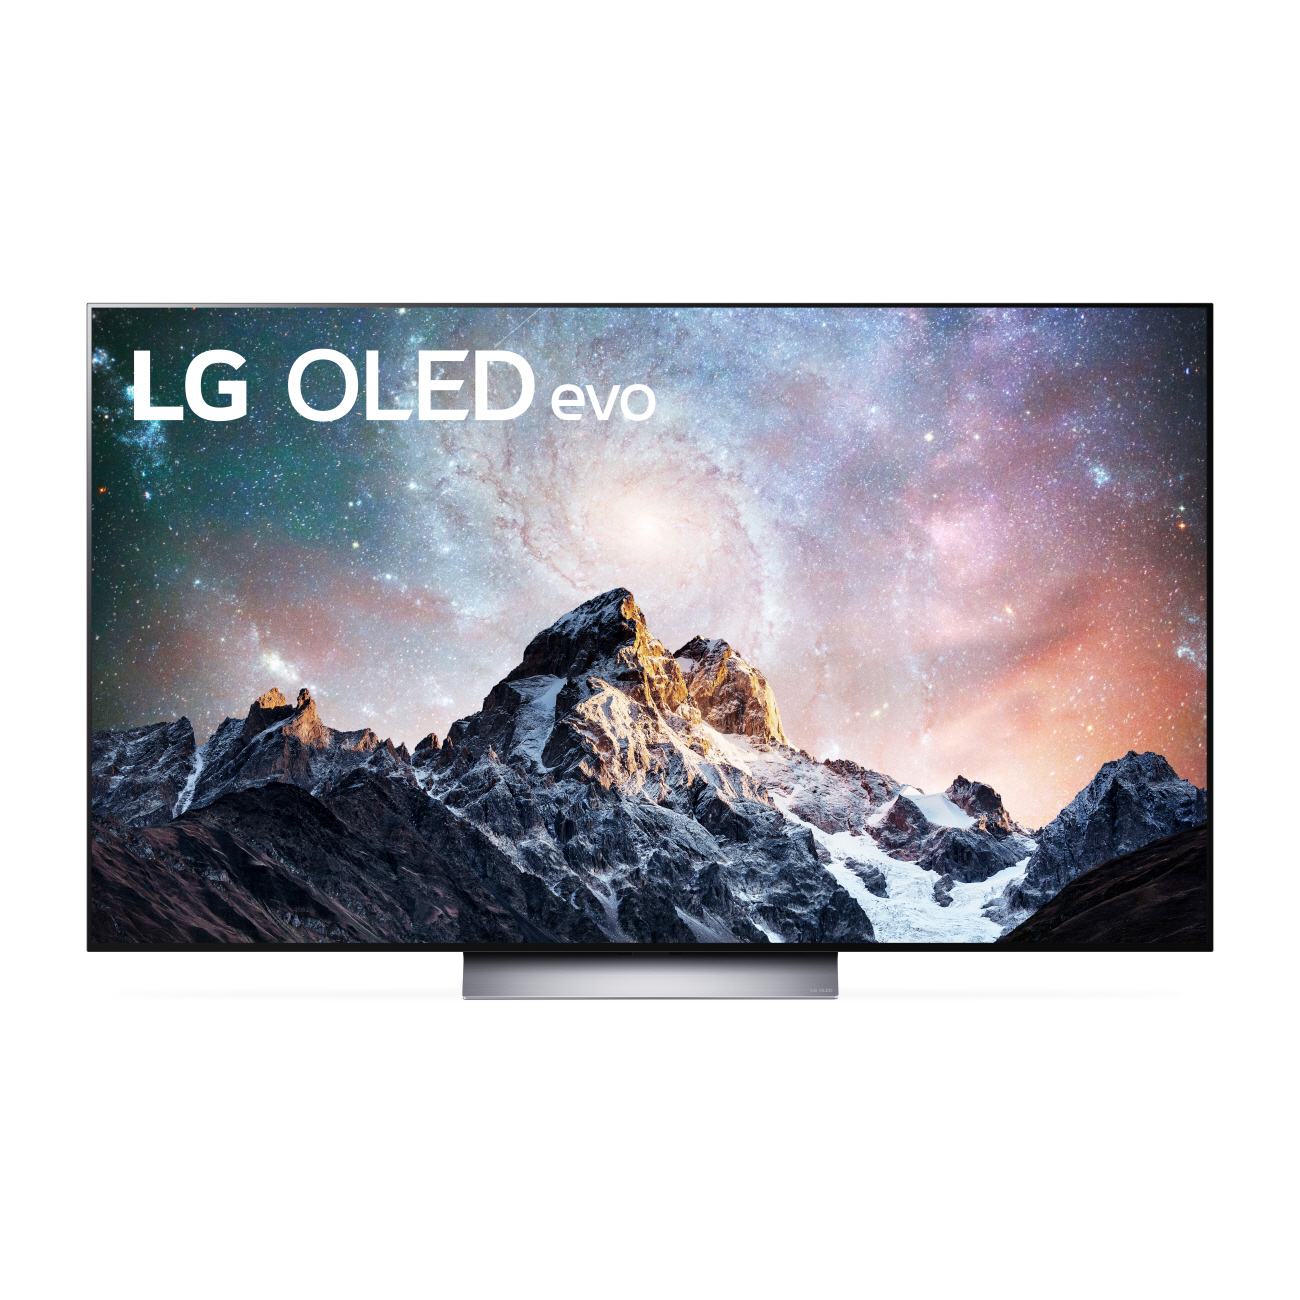 LG y sus nuevos televisores que redefinen la visualización y experiencia de usuario